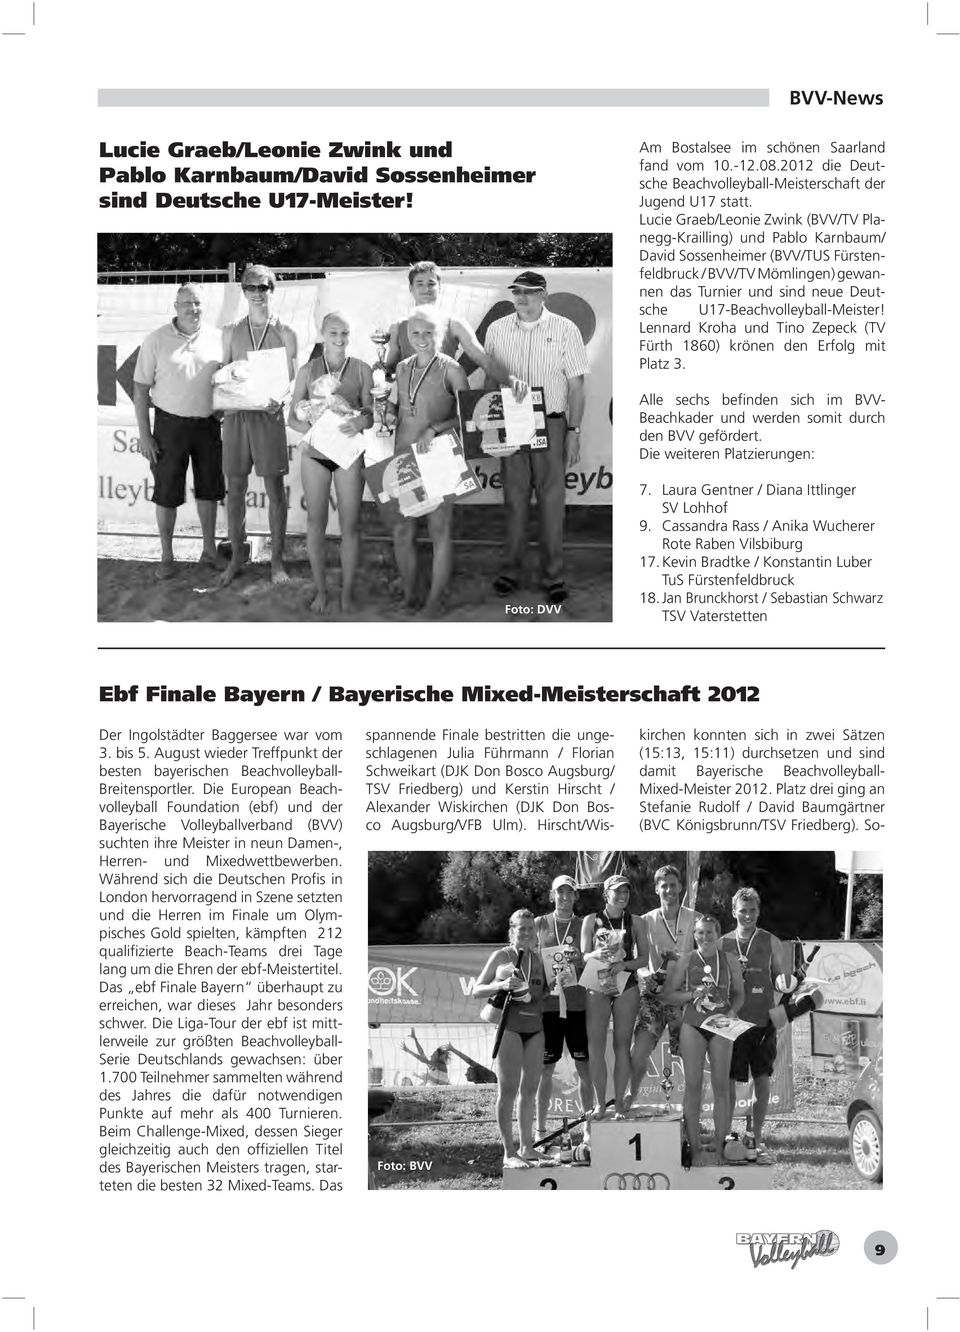 Lucie Graeb/Leonie Zwink (BVV/TV Planegg-Krailling) und Pablo Karnbaum/ David Sossenheimer (BVV/TUS Fürstenfeldbruck / BVV/TV Mömlingen) gewannen das Turnier und sind neue Deutsche